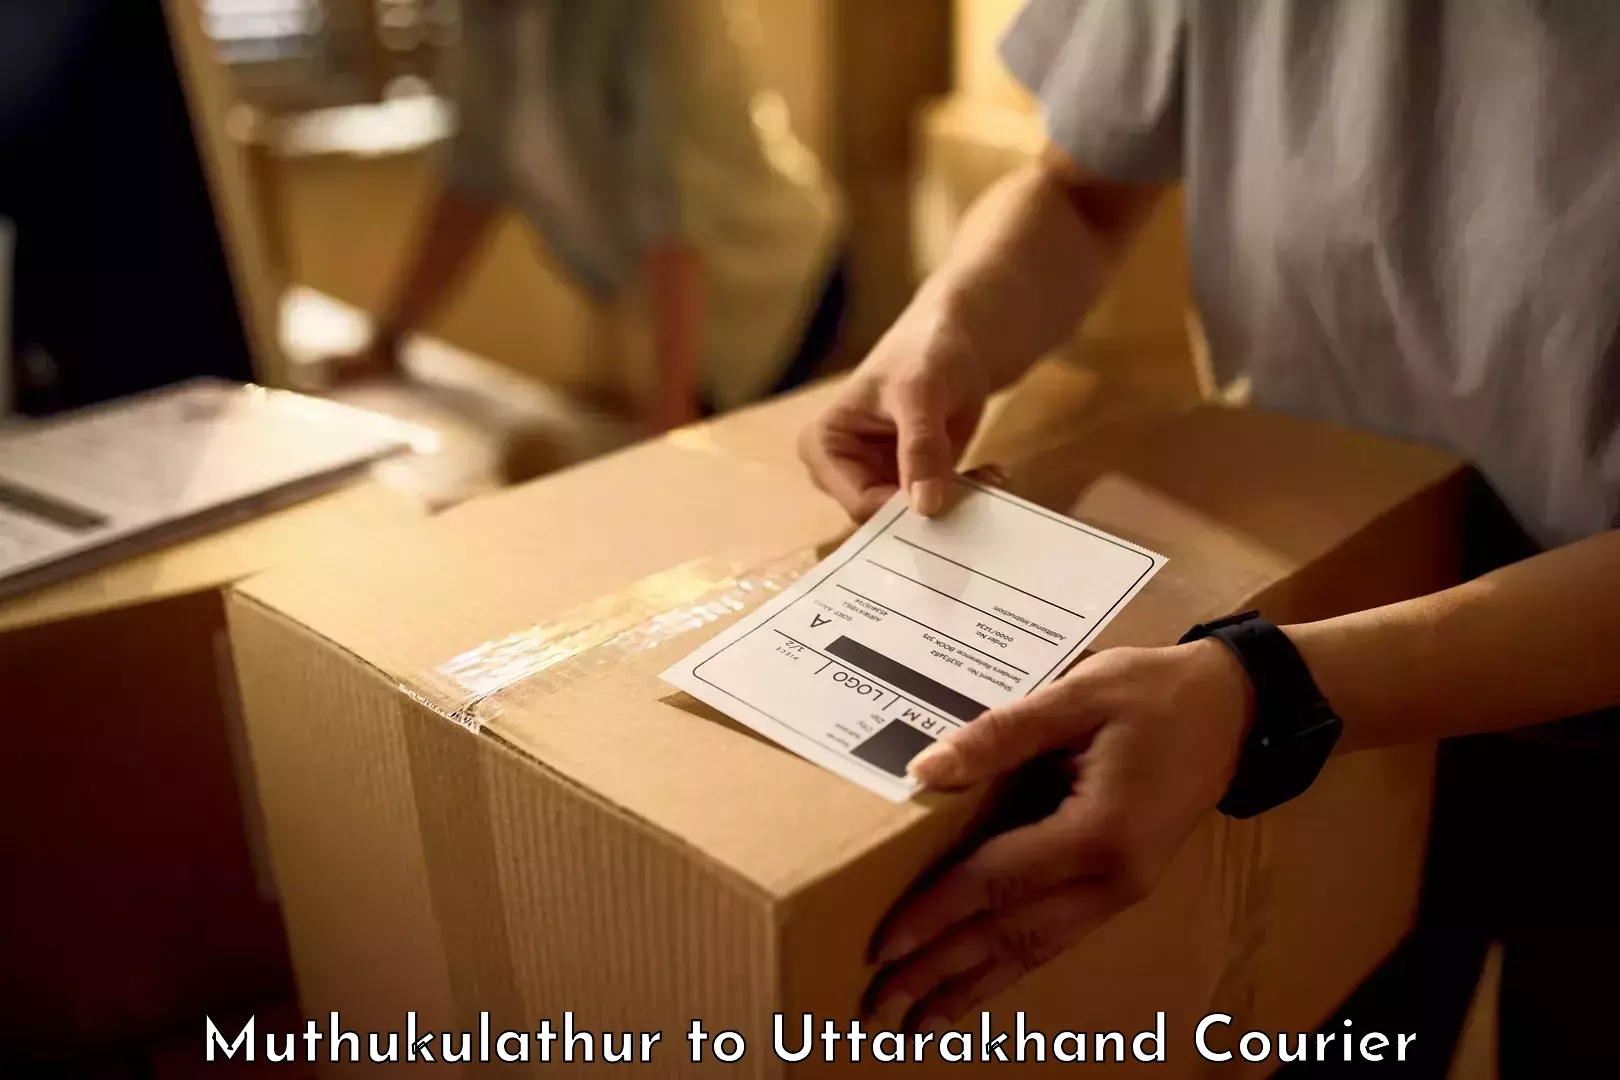 Luggage shipment tracking Muthukulathur to Kotdwara